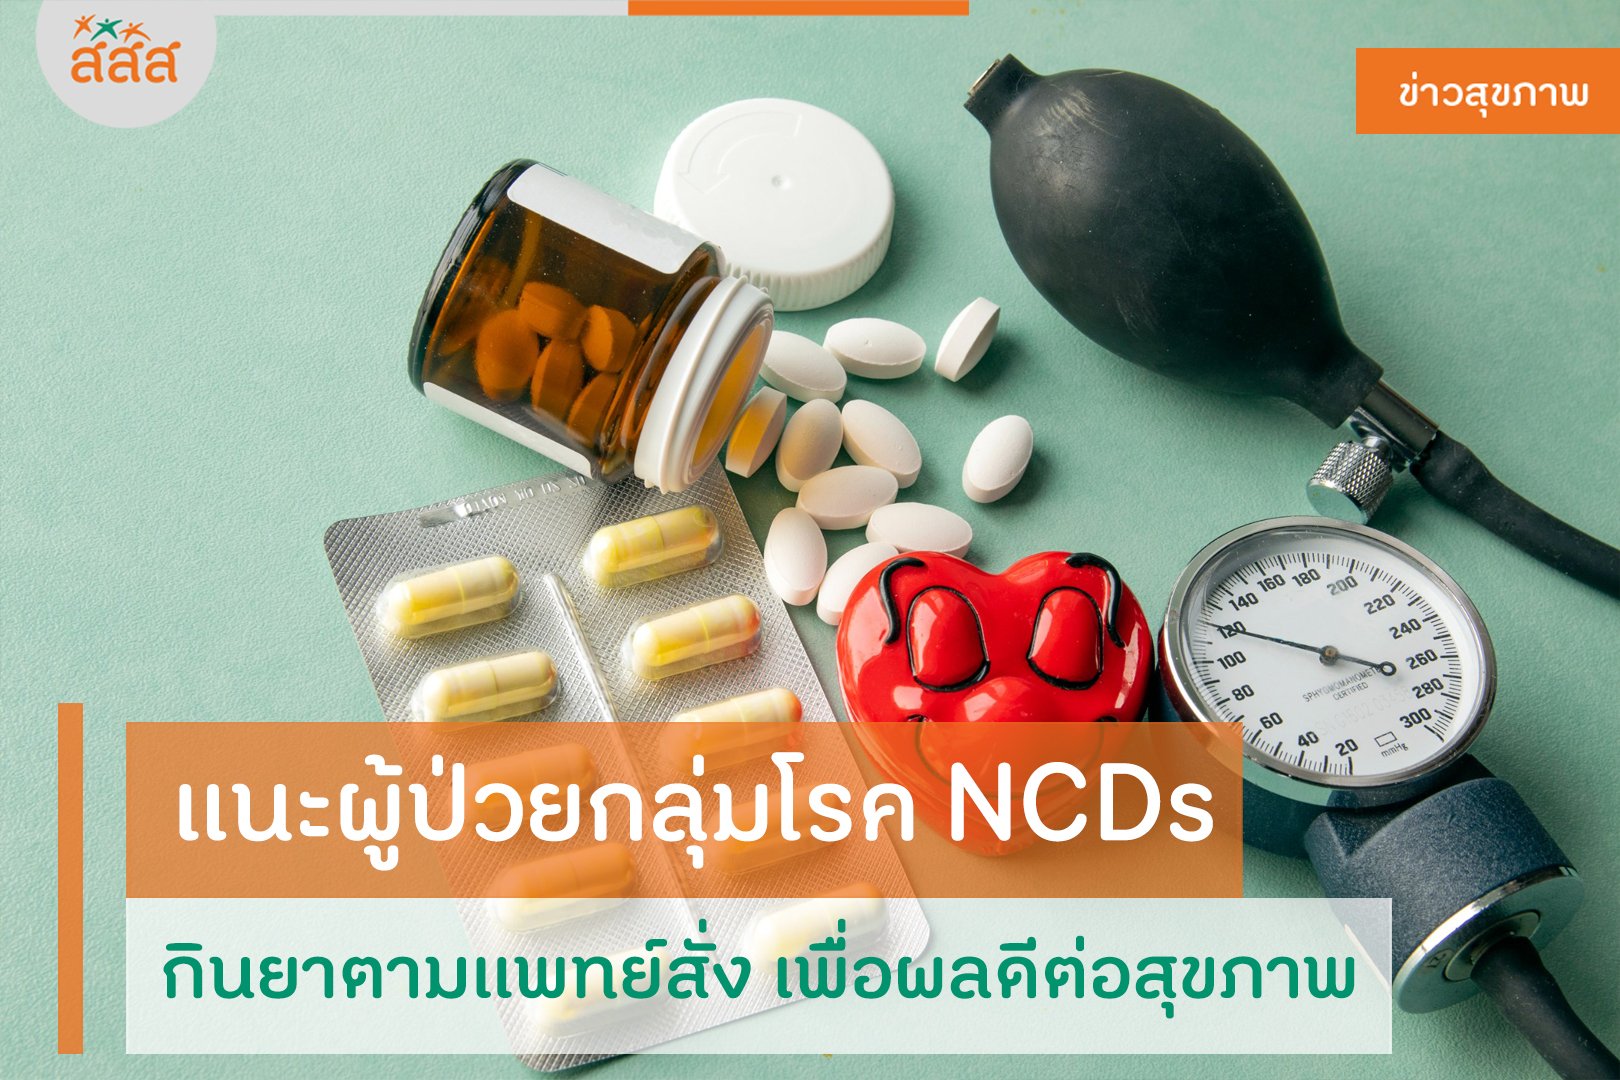 แนะผู้ป่วยกลุ่มโรค NCDs กินยาตามแพทย์สั่ง เพื่อผลดีต่อสุขภาพ thaihealth